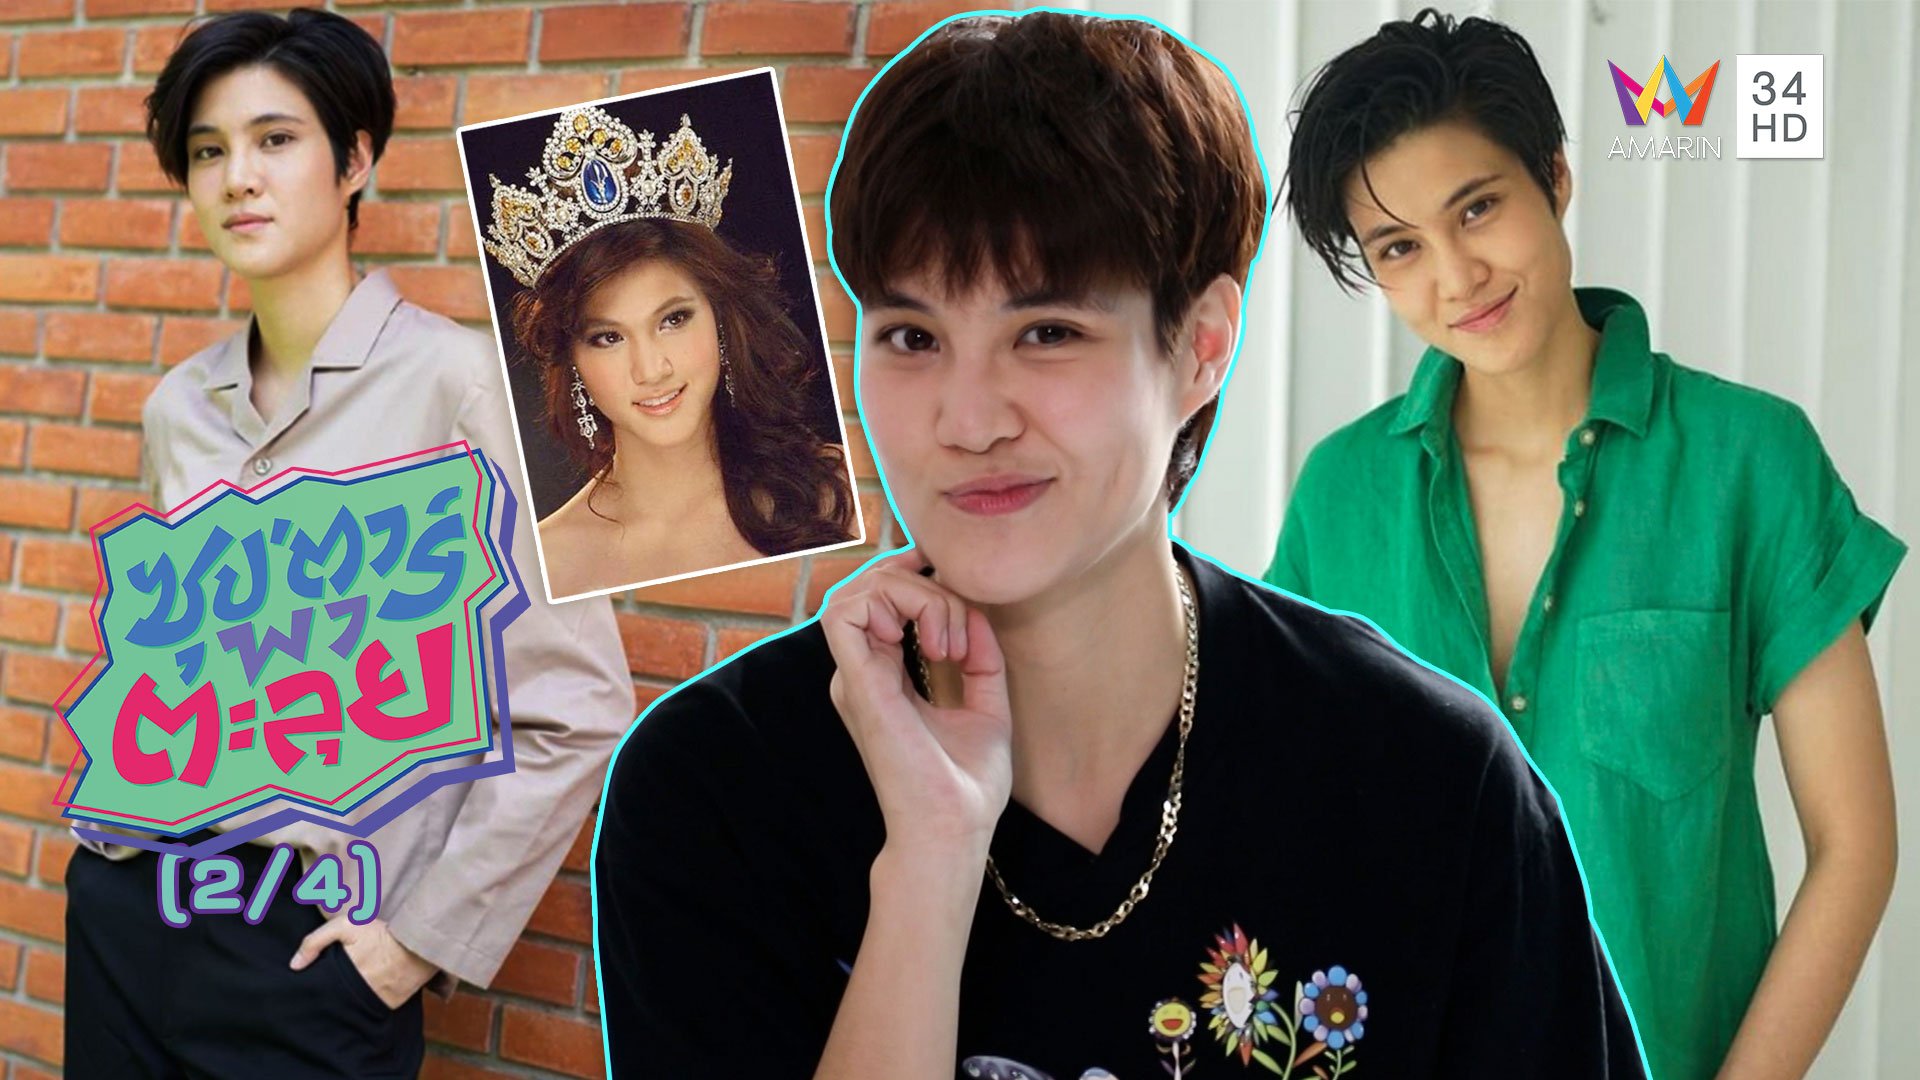 'หมอเจี๊ยบ ลลนา' ประกวดนางสาวไทย เพราะอยากช่วยเหลือสังคม | ซุปตาร์พาตะลุย | 17 ธ.ค. 63 (2/4) | AMARIN TVHD34